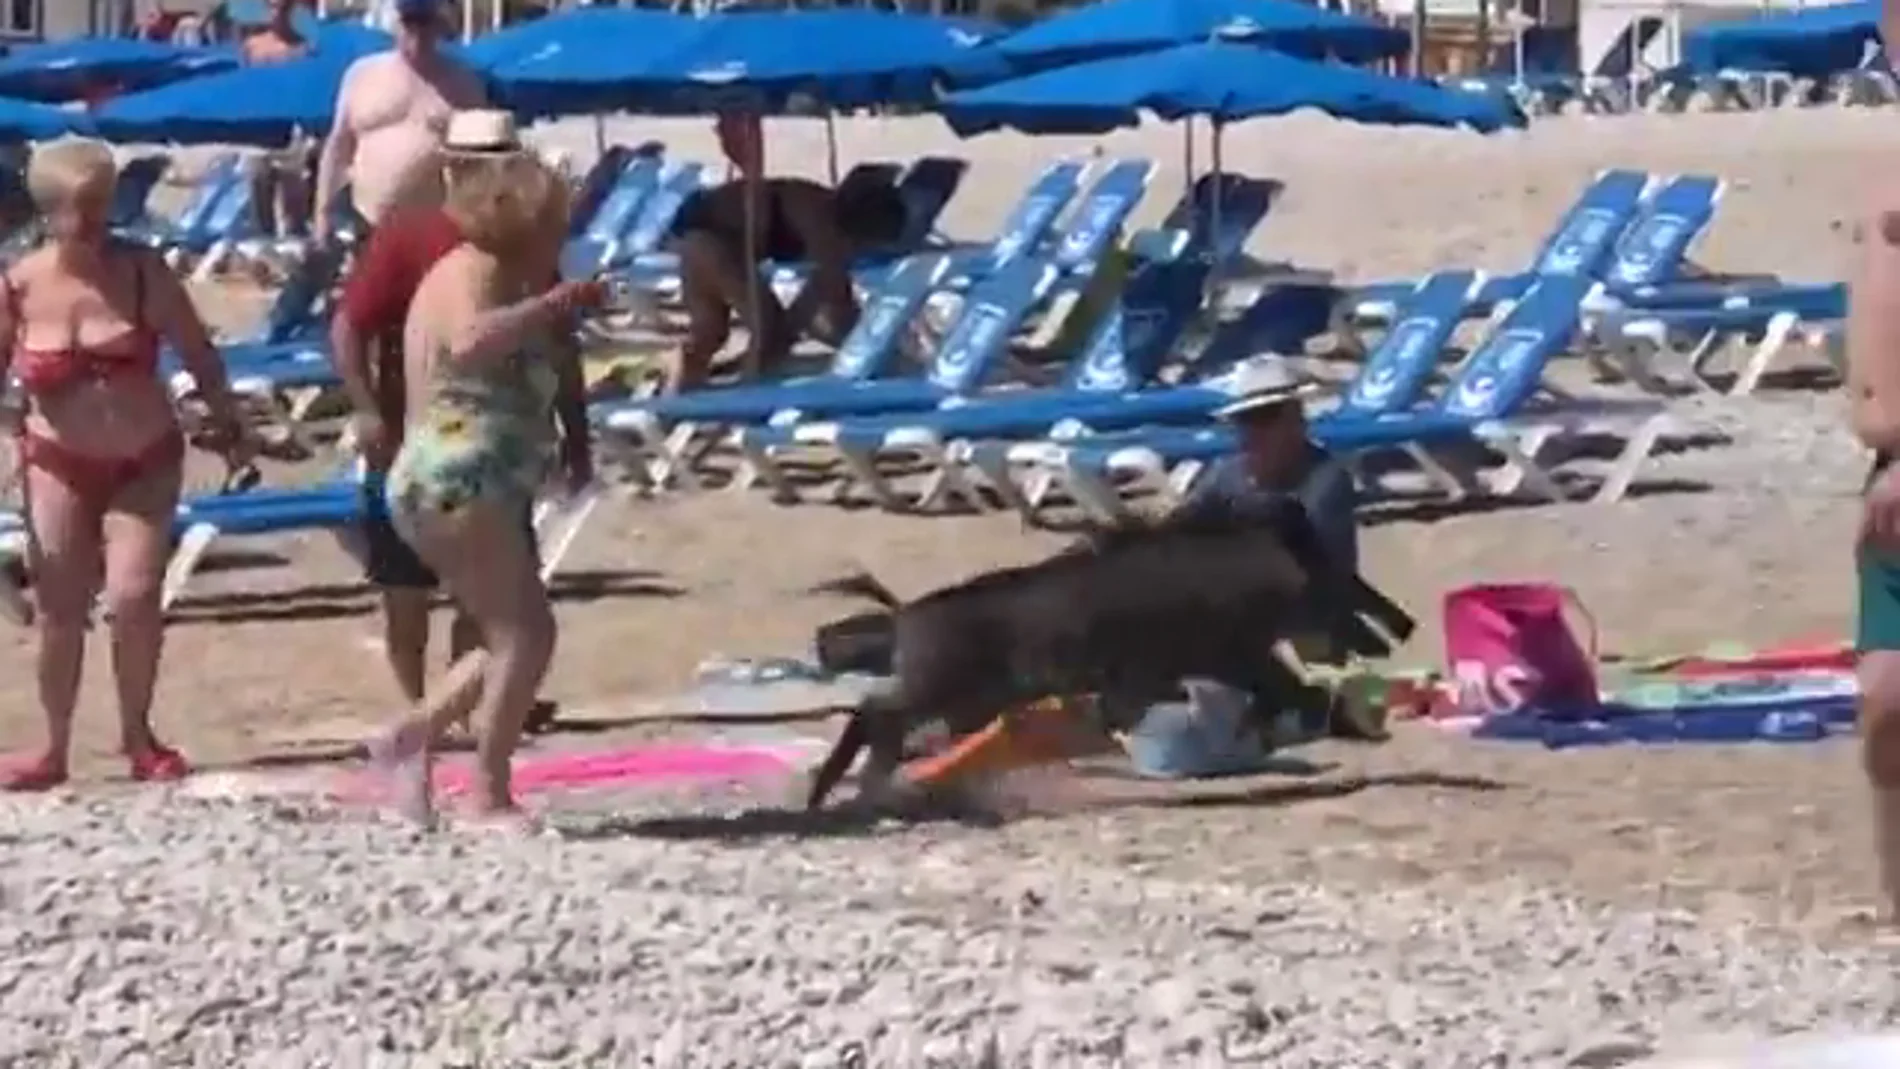 Un jabalí sale del mar en una playa de Alicante y muerde a una bañista de 67 años